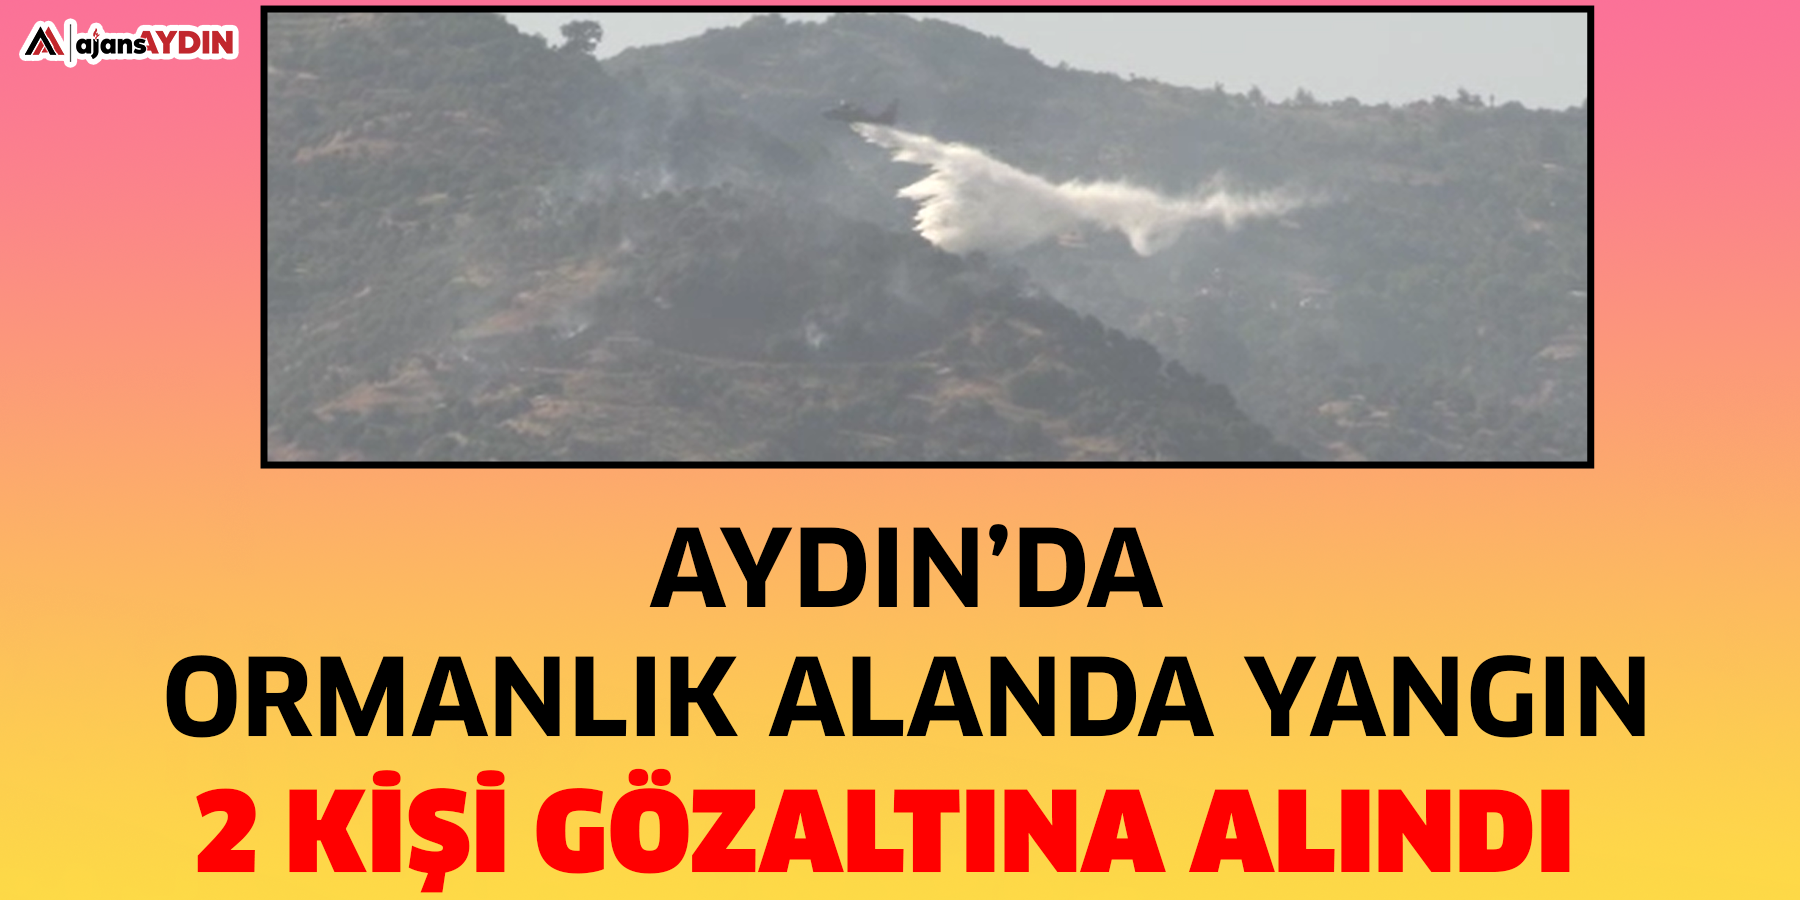 Aydın’da ormanlık alanda yangın  2 kişi gözaltına alındı